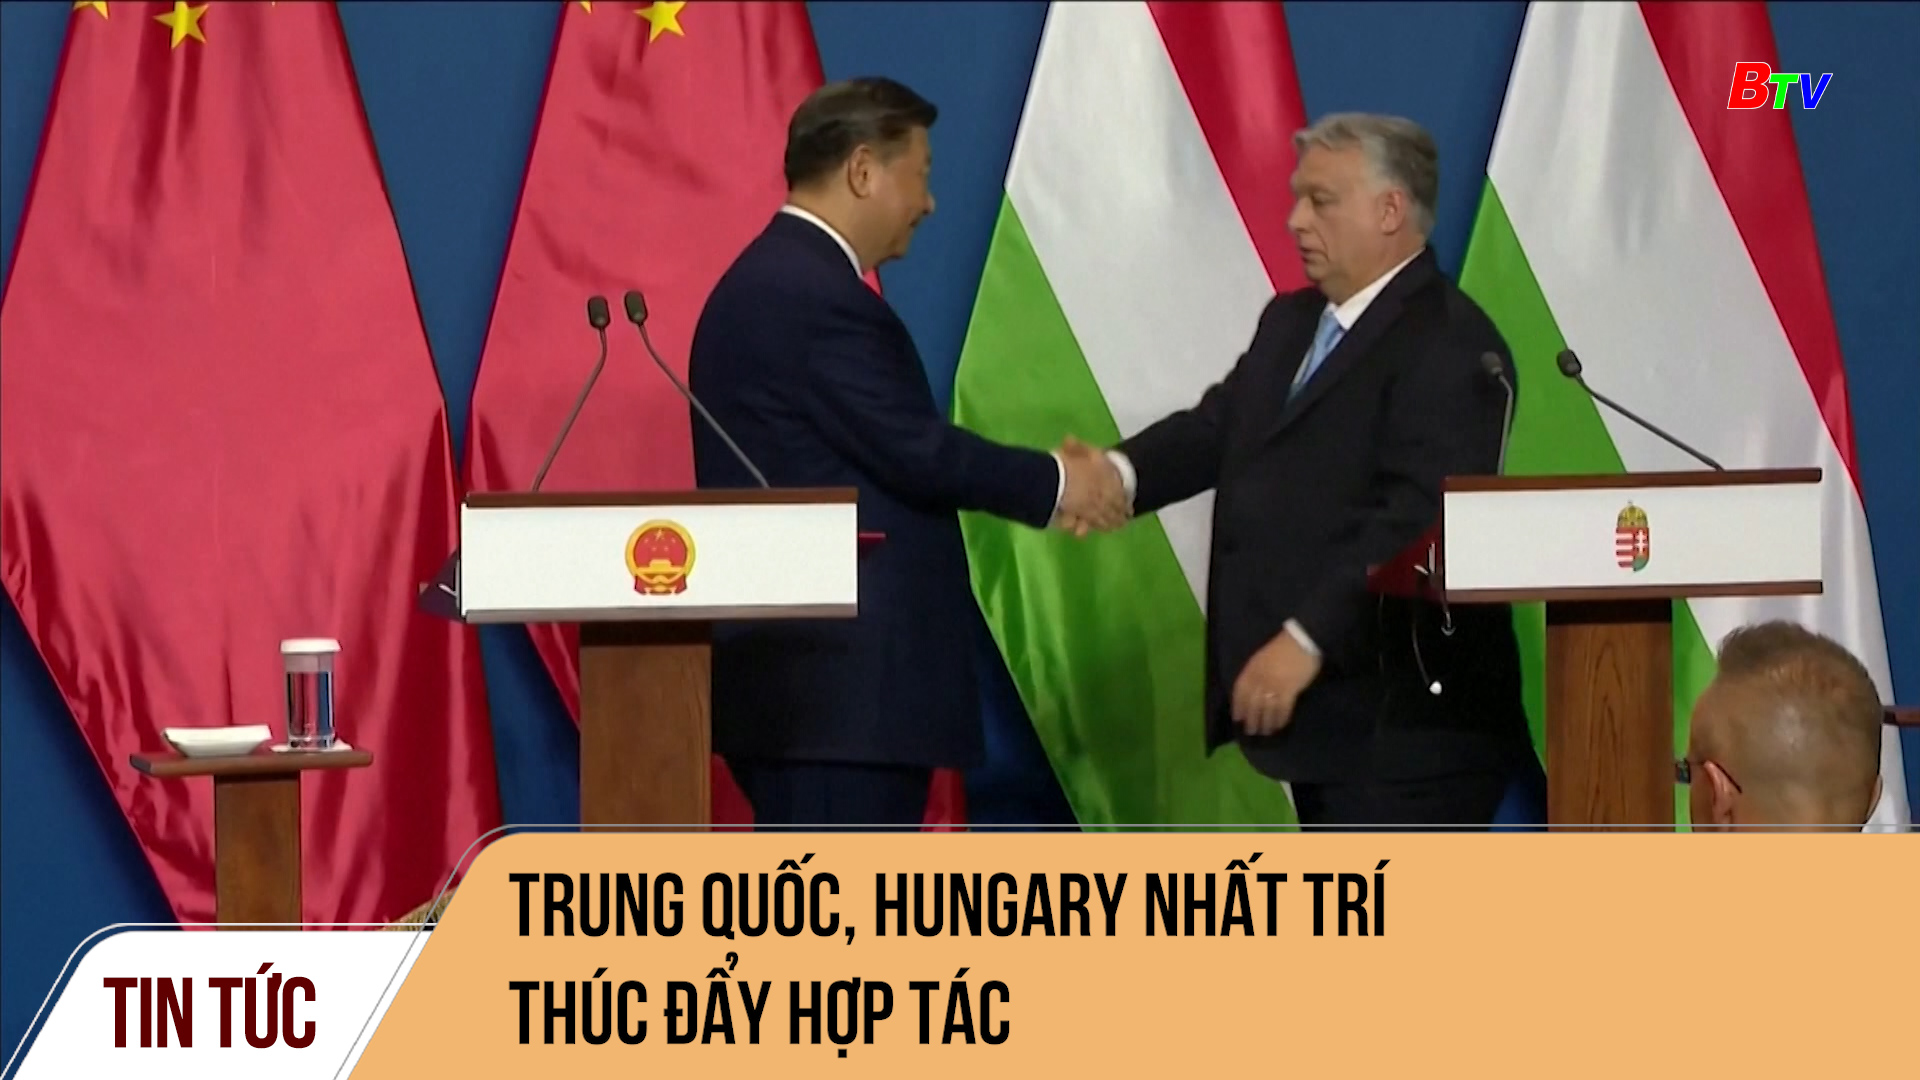 Trung quốc, Hungary nhất trí thúc đẩy hợp tác